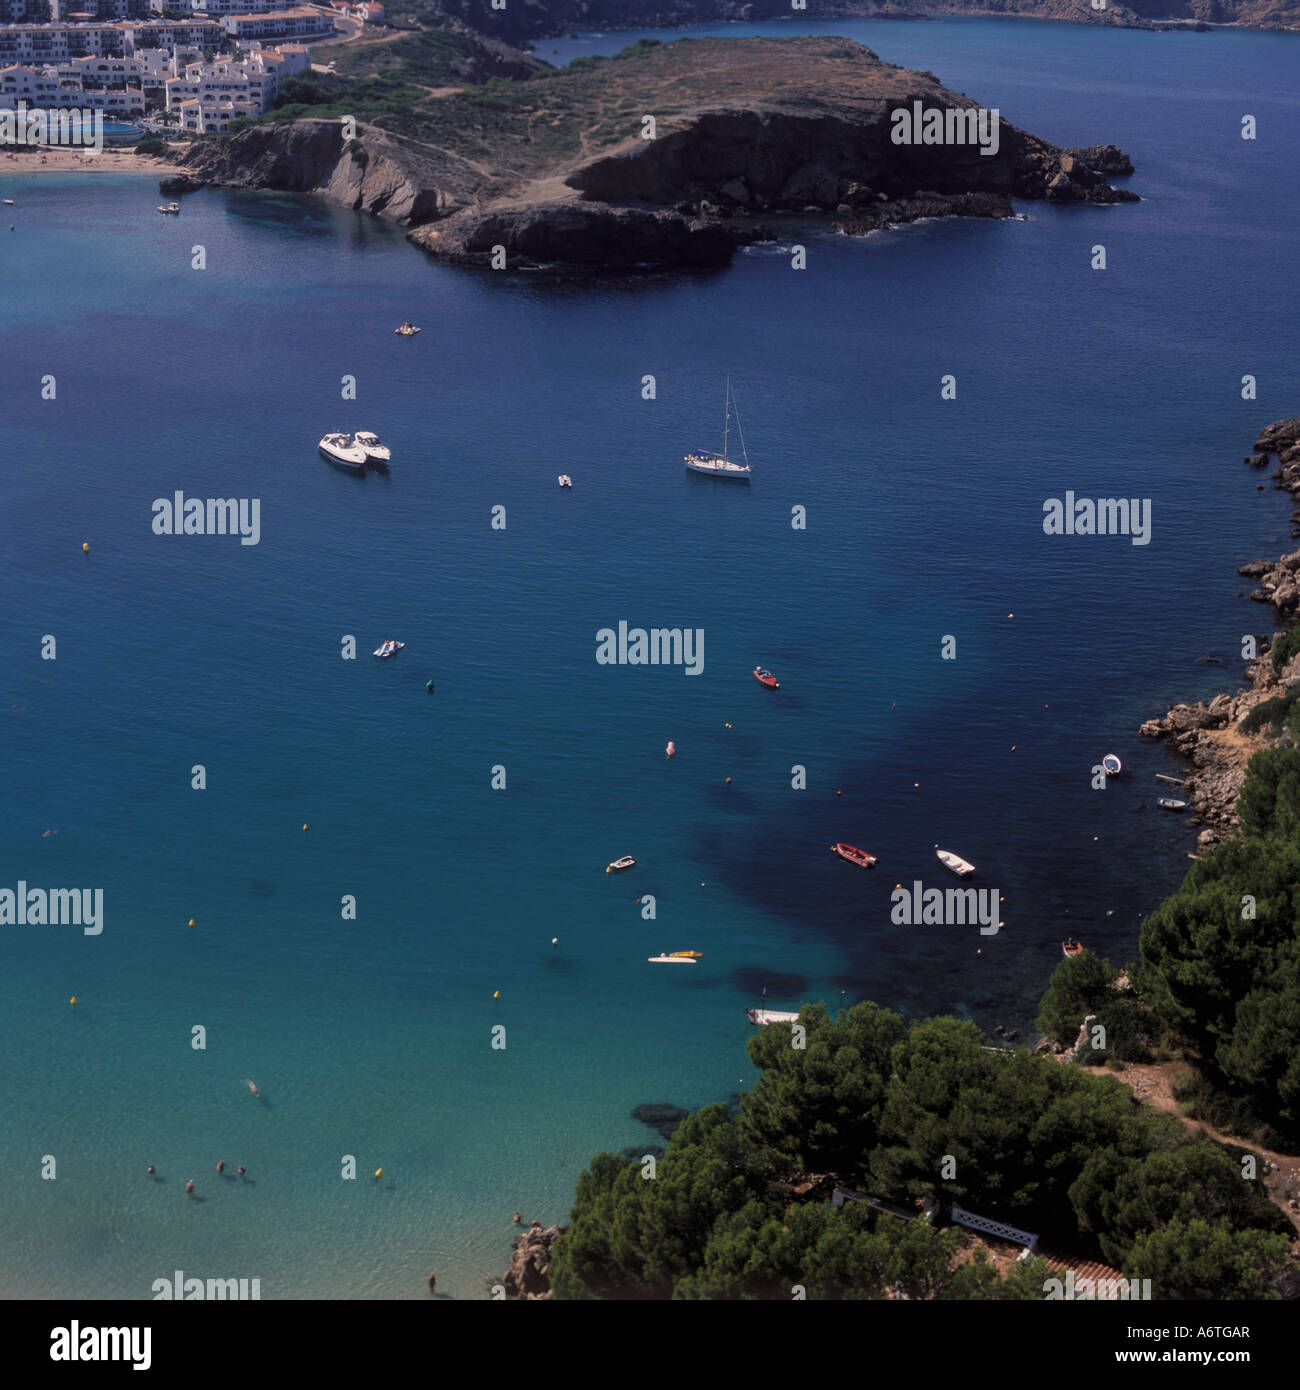 Vista aérea - sección de bahía con amarran embarcaciones de recreo mirando al Oeste - Arenal d'en Castell, costa norte de Menorca / Menorca. Foto de stock